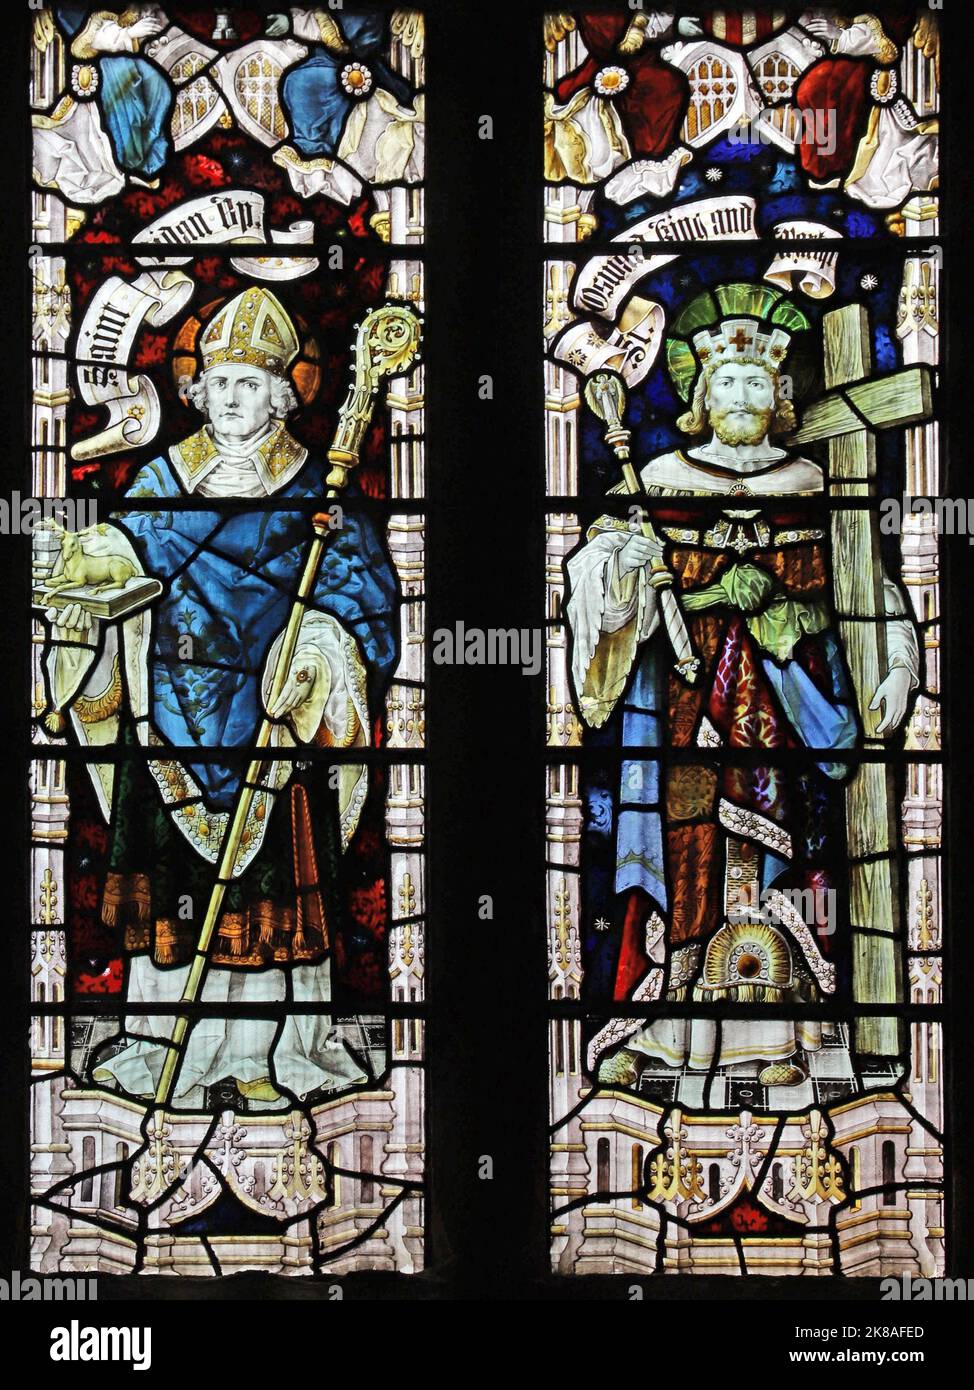 Buntglasfenster von Percy Bacon & Brothers, das die Heiligen Aidan von Lindisfarne & Oswald, die Kirche St. Tschad, Bensham und Gateshead darstellt Stockfoto